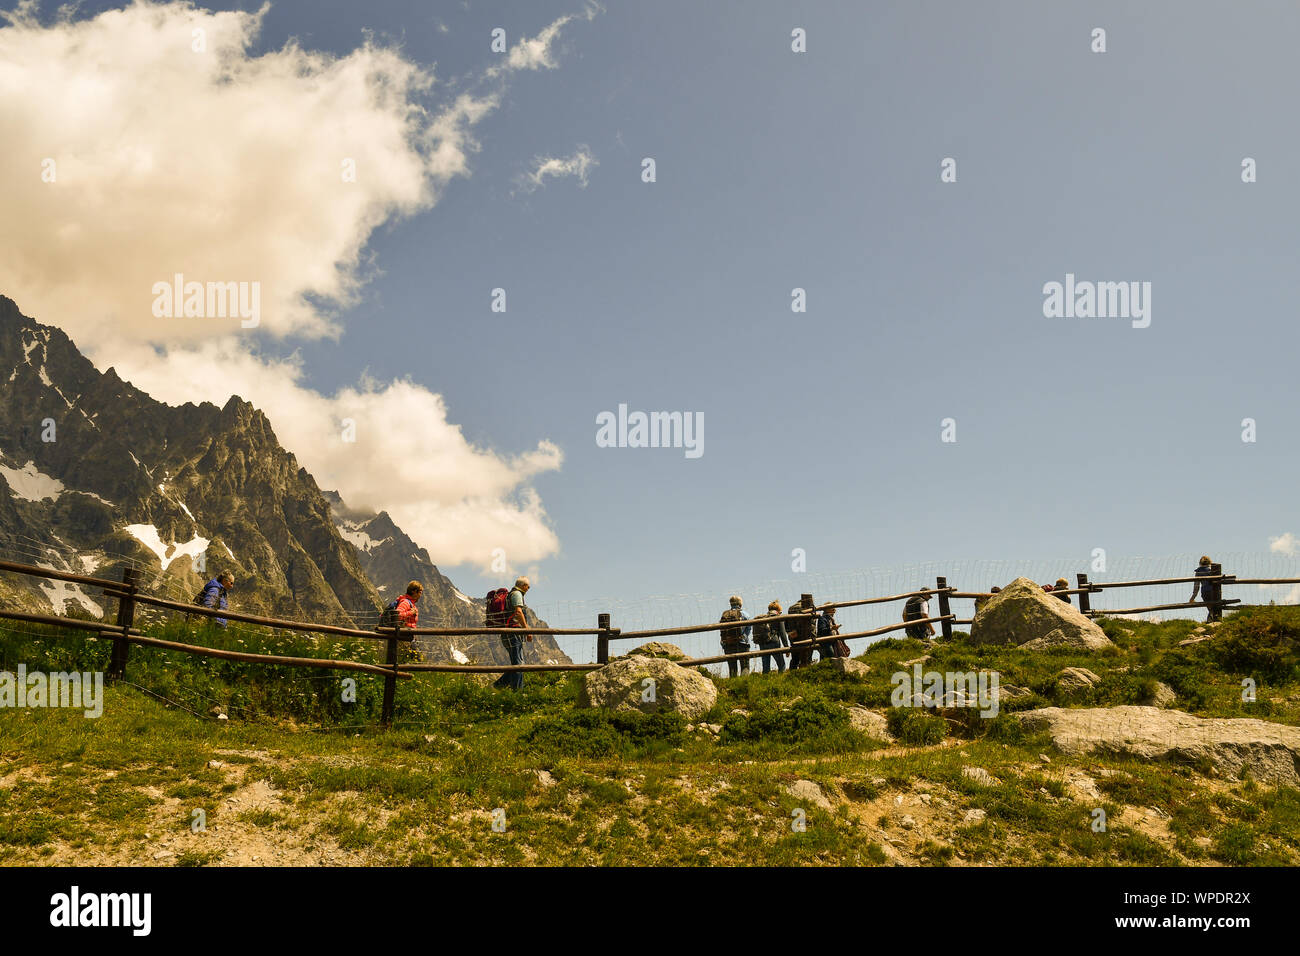 Eine Gruppe älterer Wanderer in der alpinen Botanischen Garten Saussurea der Skyway Monte Bianco im Sommer, Courmayeur, Aostatal, Alpen, Italien Stockfoto